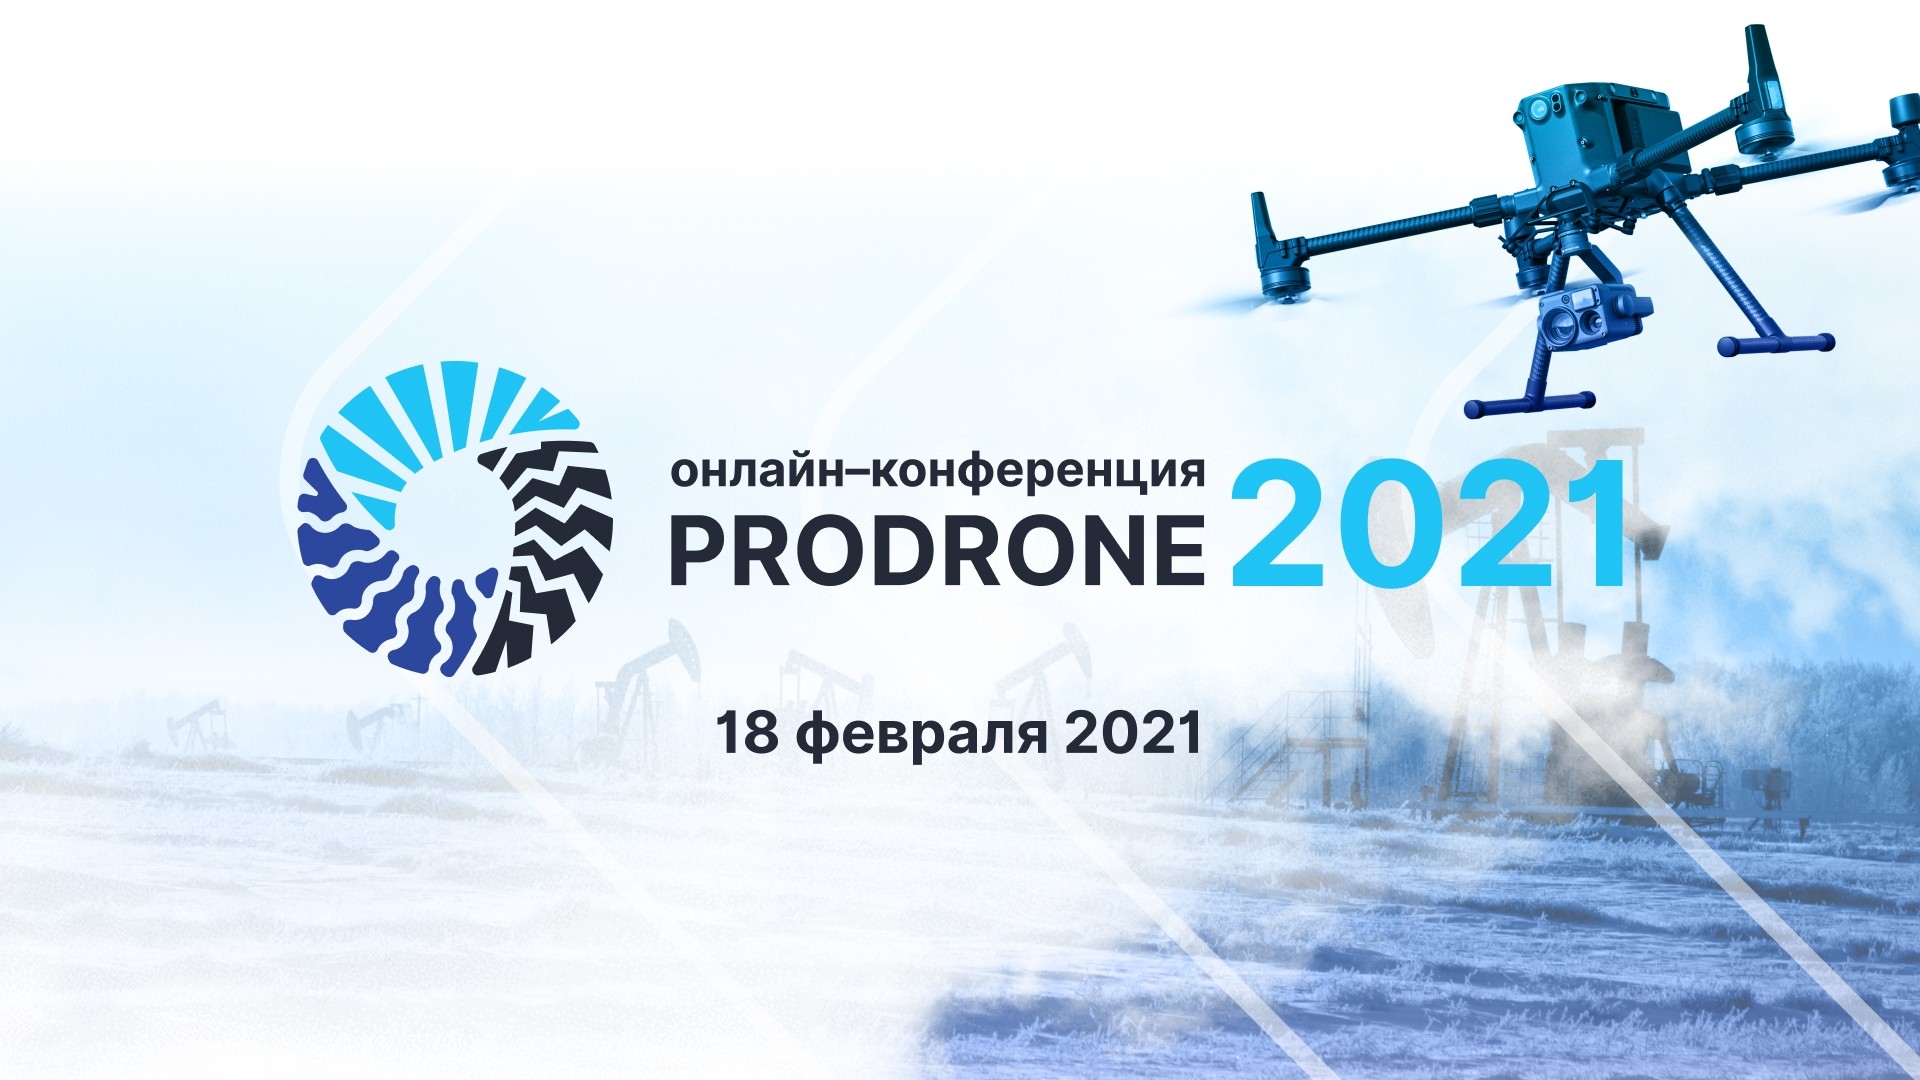 18.02.2021 с 9 до 17ч (Мск) мы проводим онлайн-конференцию PRODRONE-2021